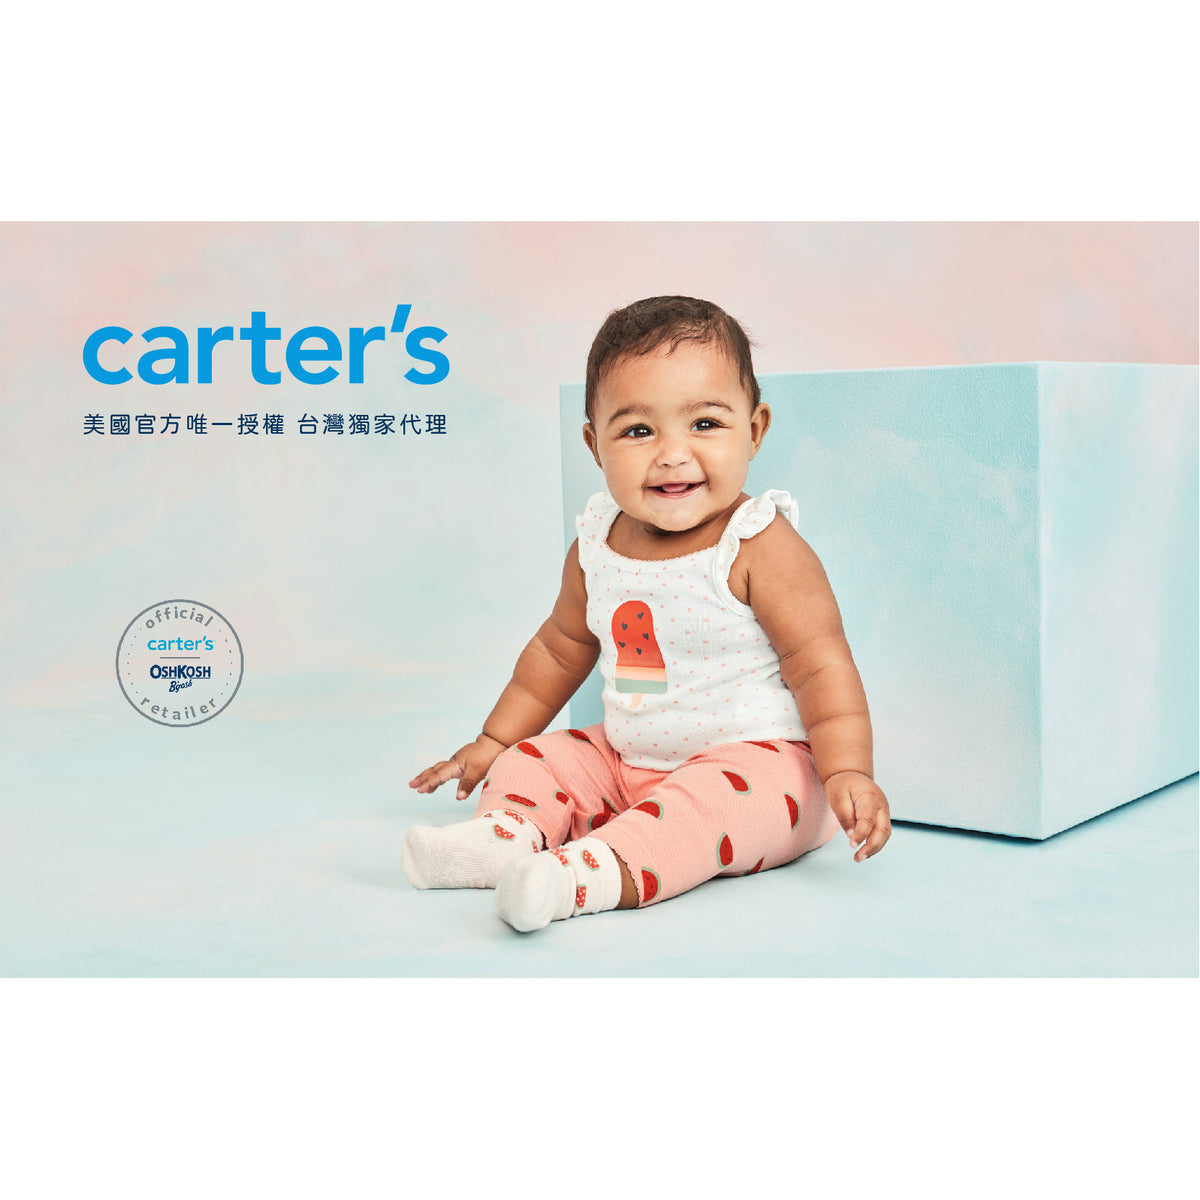 Carter's 陽光粉橘無袖上衣(12M-24M)